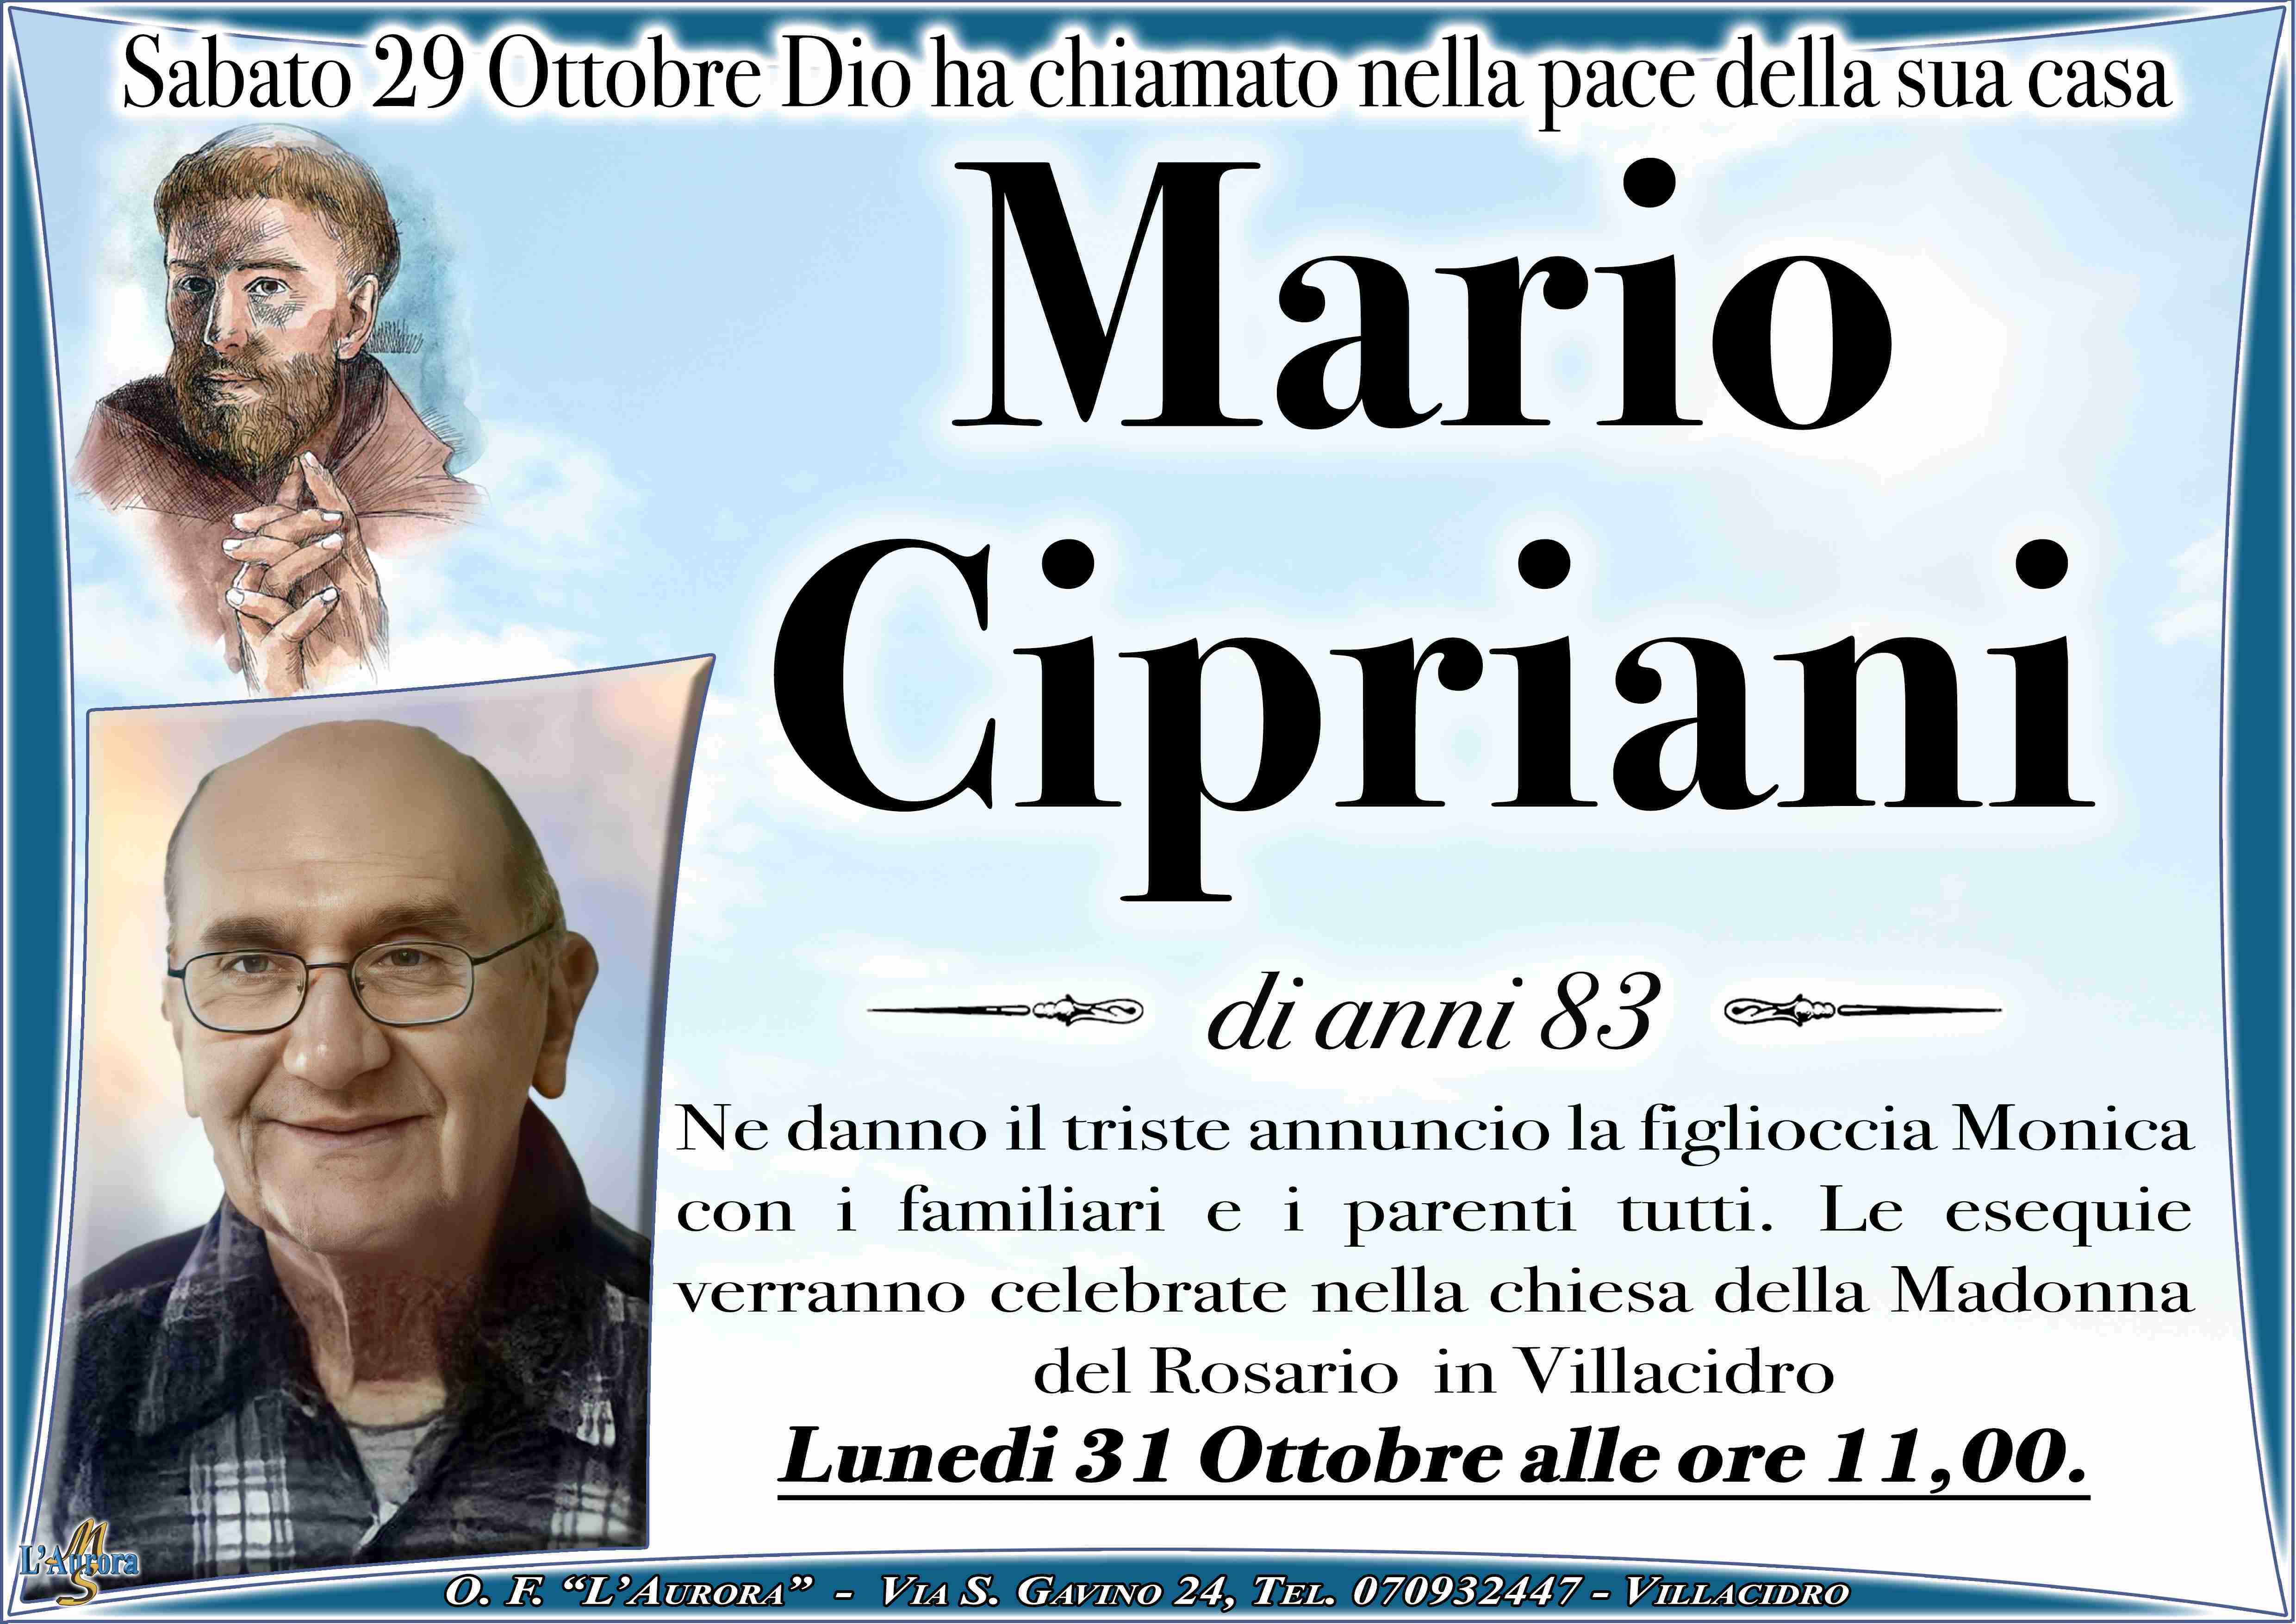 Mario Cirpiani